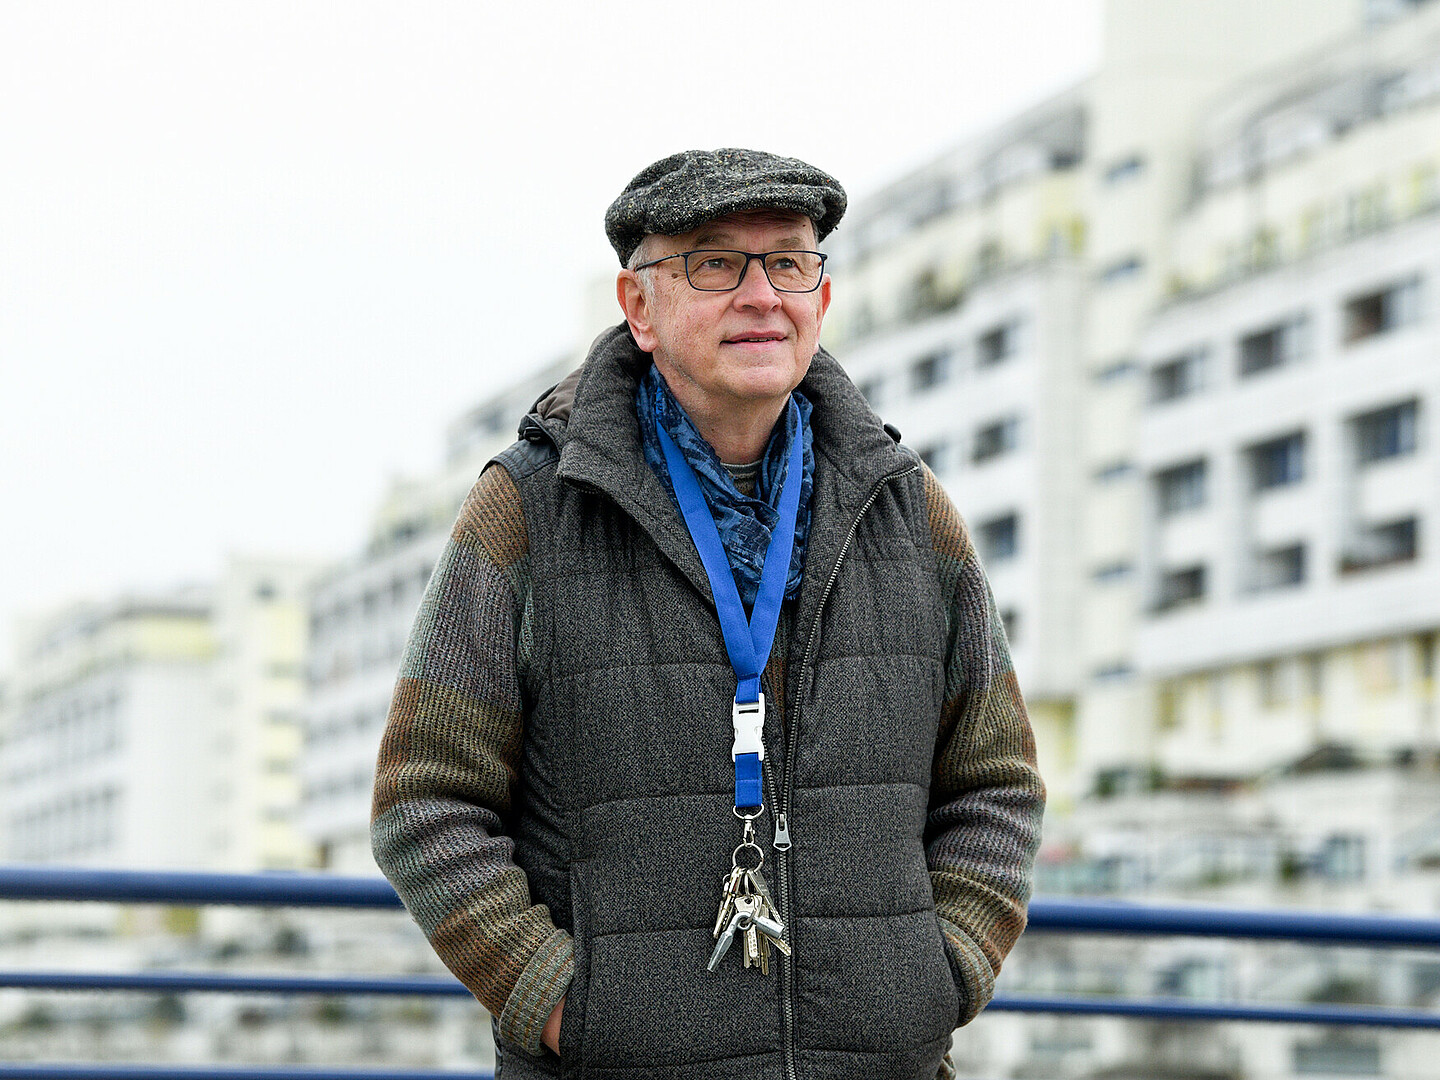 Haustechniker Dirk Schulte hat einen großen blauem Schlüsselbund um den Hals gehangen, er steht vor einem unscharfem Hintergrund, das Gebäude „Schlange“ ist erkennbar.